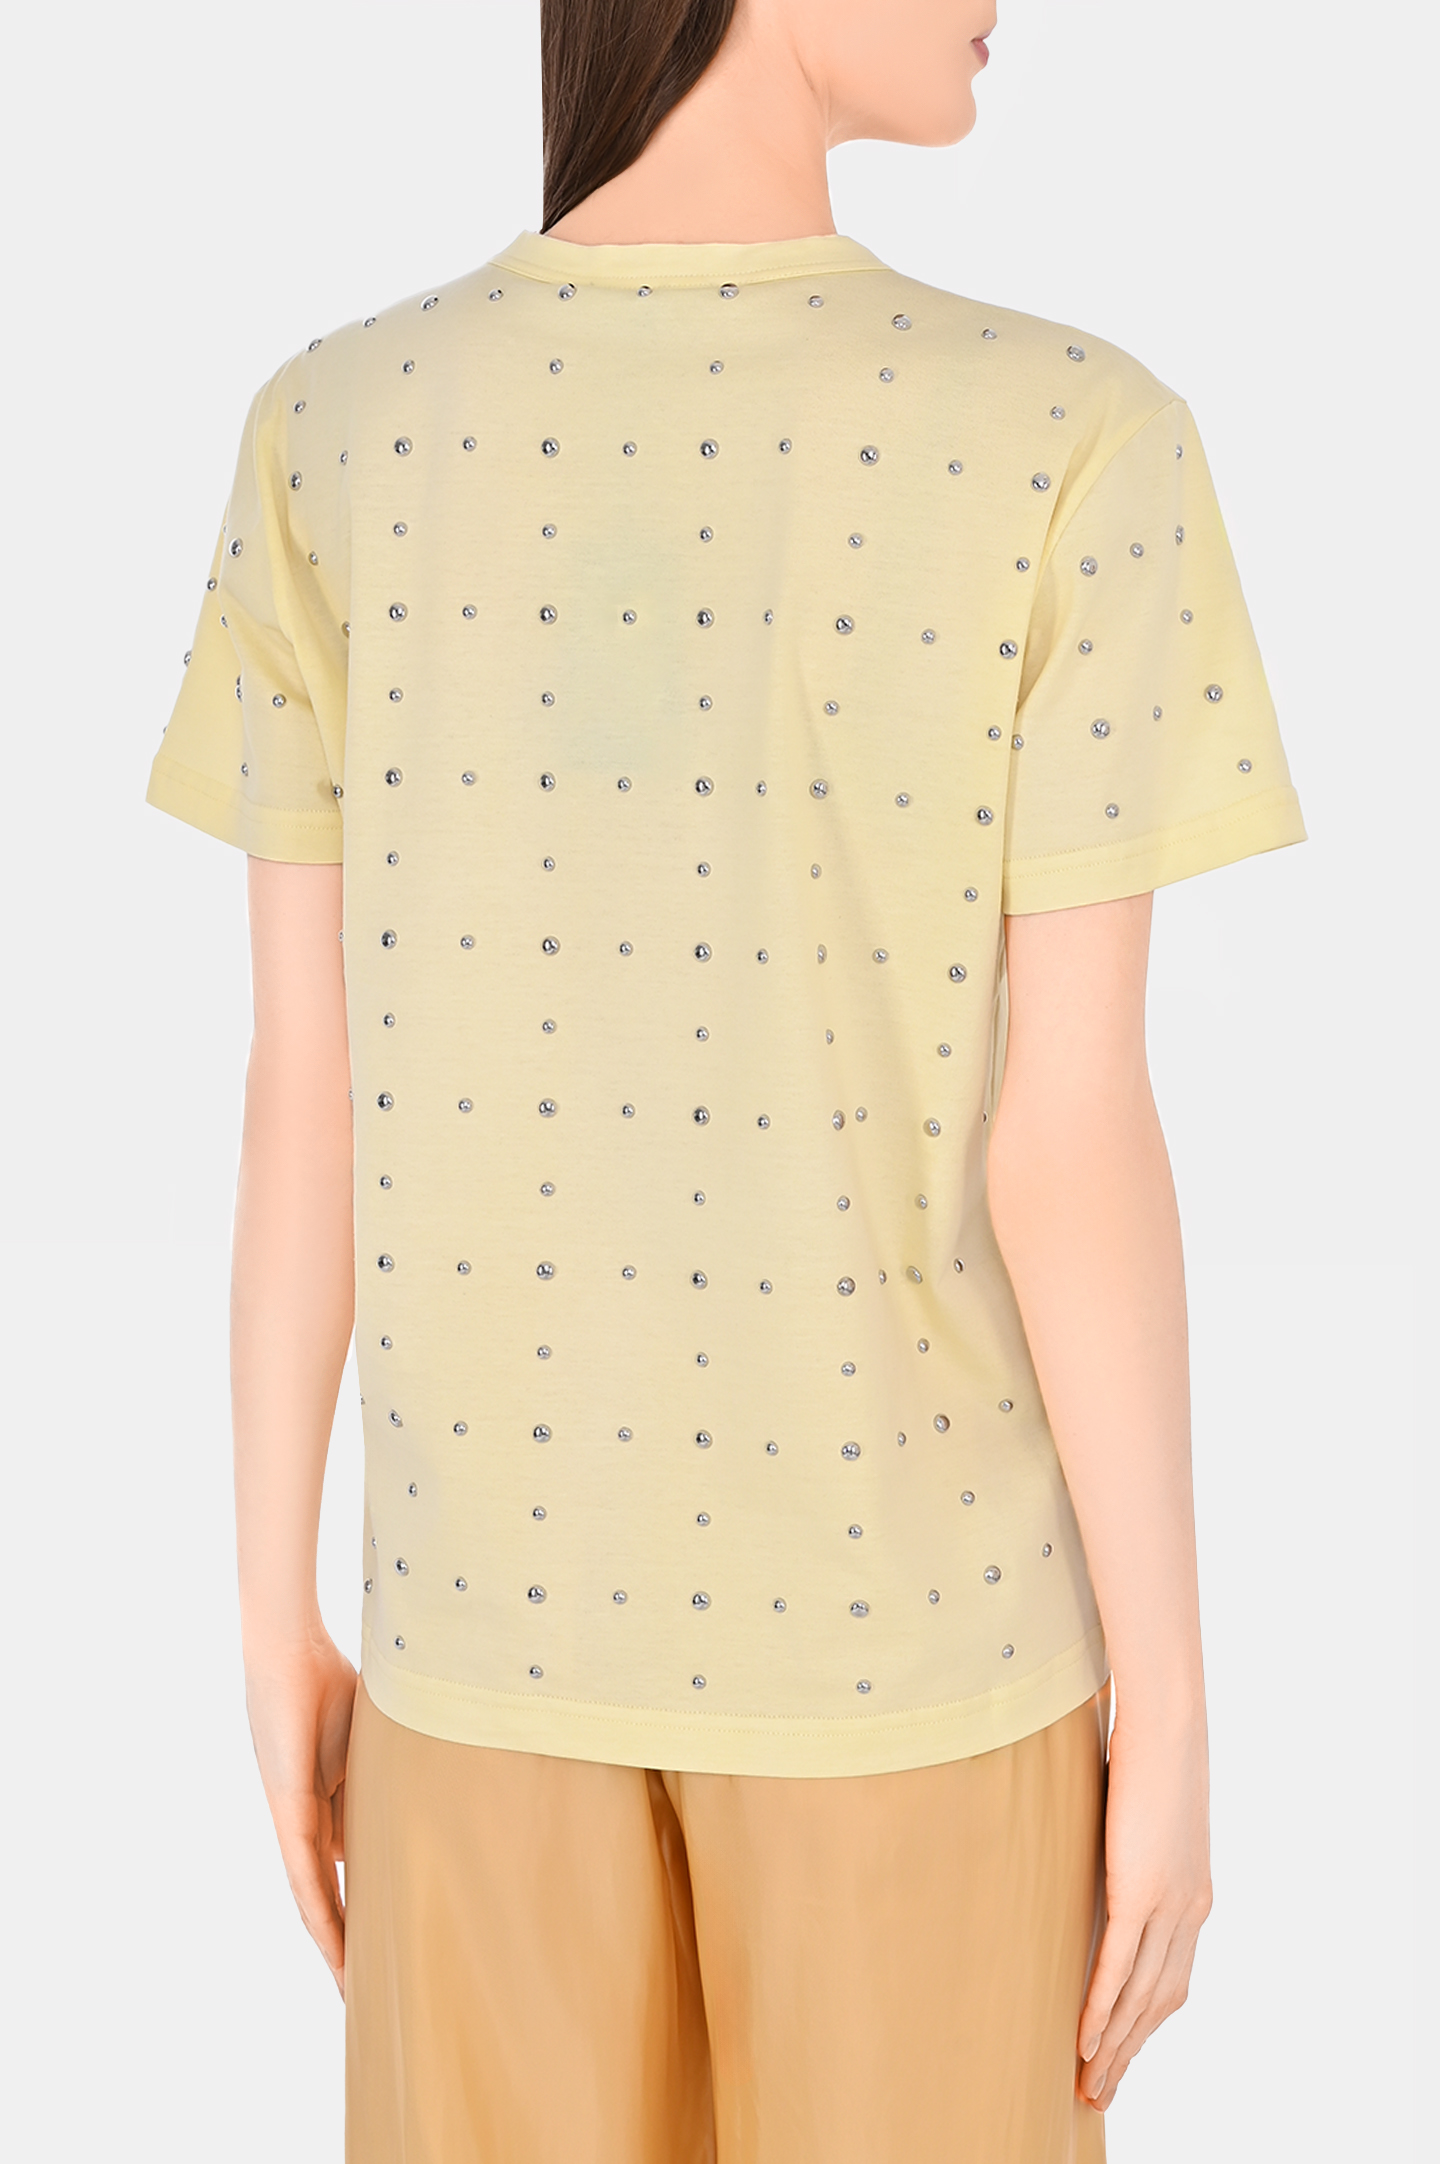 Хлоковая футболка со стразами FABIANA FILIPPI JED274F445H484, цвет: Желтый, Женский